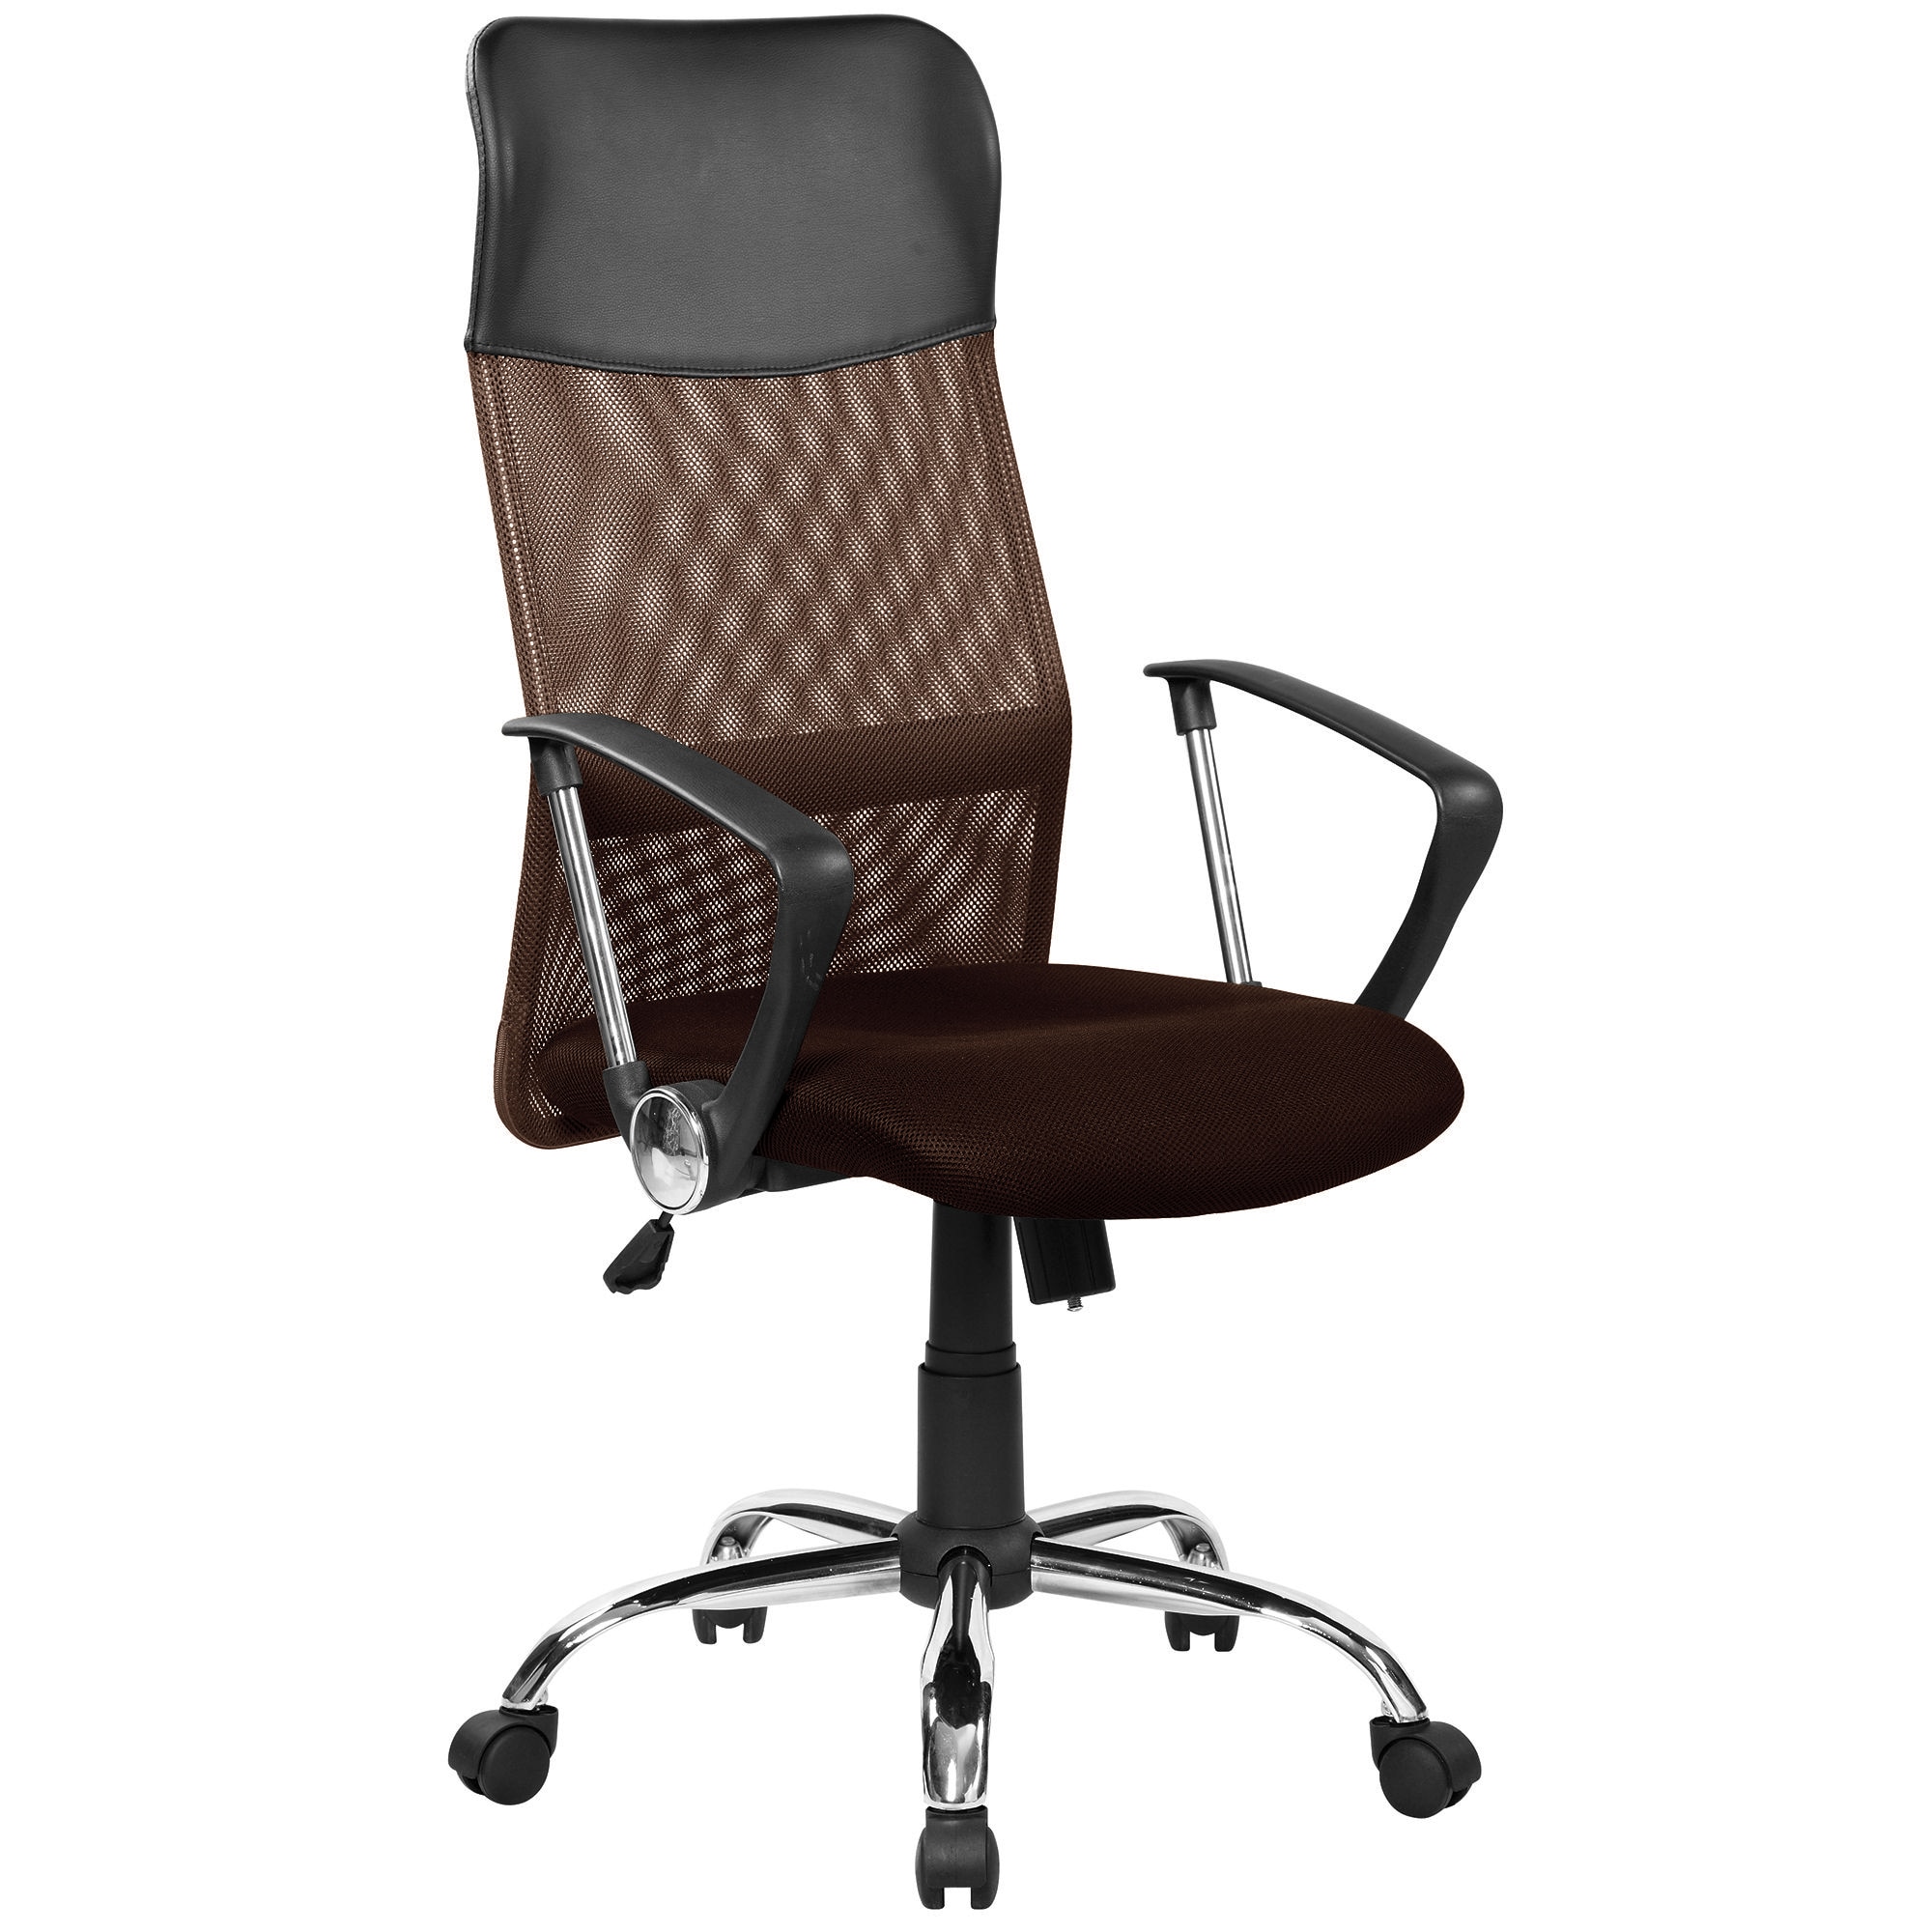 Сетчатая спинка. Кресло руководителя FX-139. Кресло direct 3012h. Кресло офисное с  стандарт BIFMA 5,1.